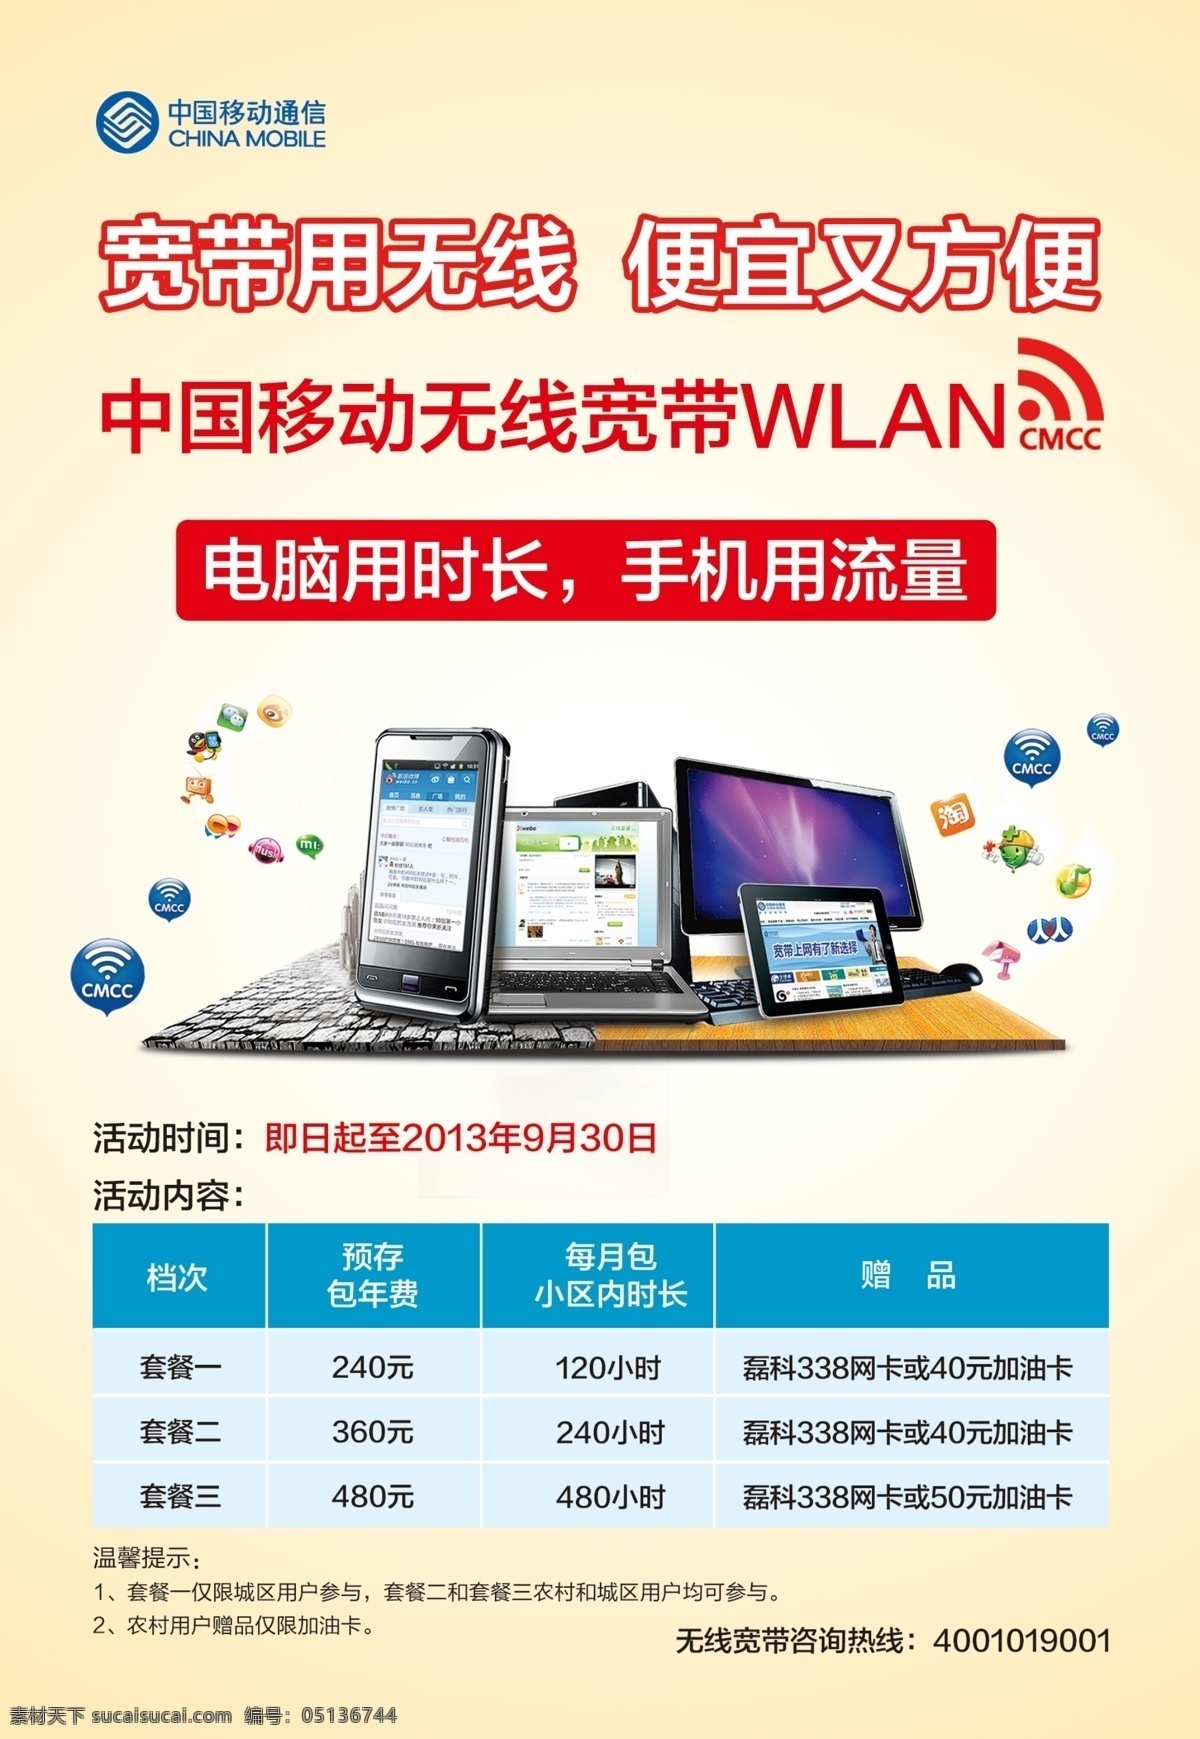 中国移动 笔记本 手机 宣传单 笔记本电脑 淘宝 电脑 液晶电脑 cmcc图标 微信图标 qq图标 人人网图标 360图标 微薄图标 白色